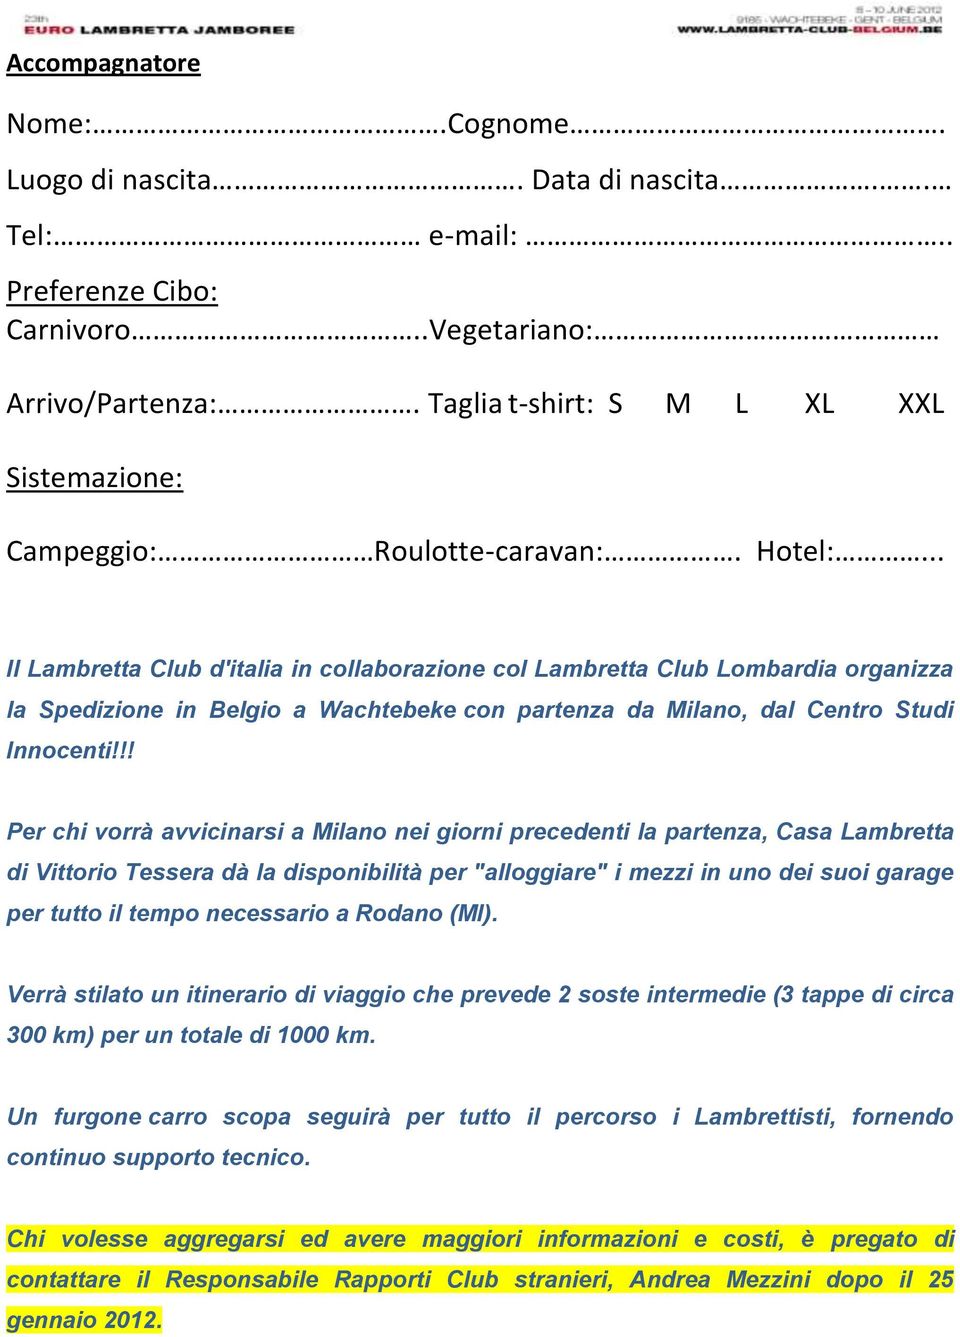 .. Il Lambretta Club d'italia in collaborazione col Lambretta Club Lombardia organizza la Spedizione in Belgio a Wachtebeke con partenza da Milano, dal Centro Studi Innocenti!